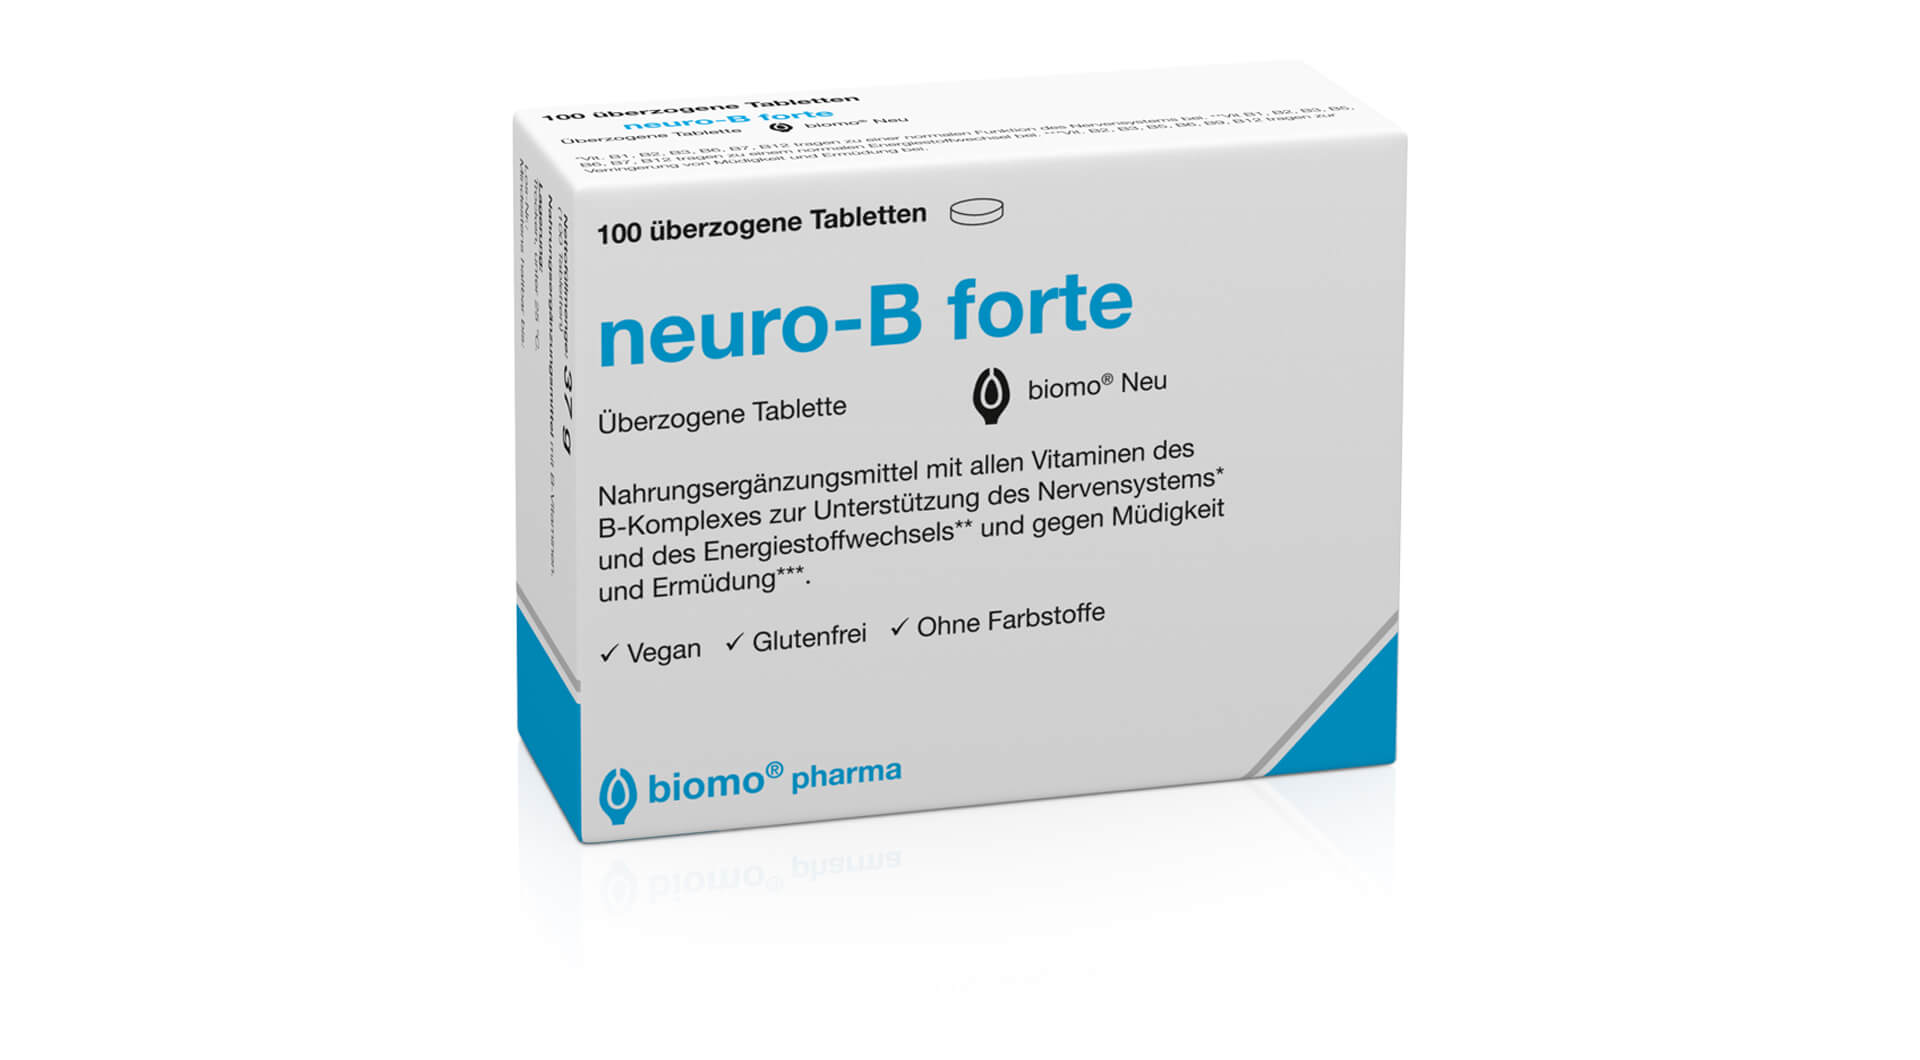 neuro-B forte biomo Neu (NEM)